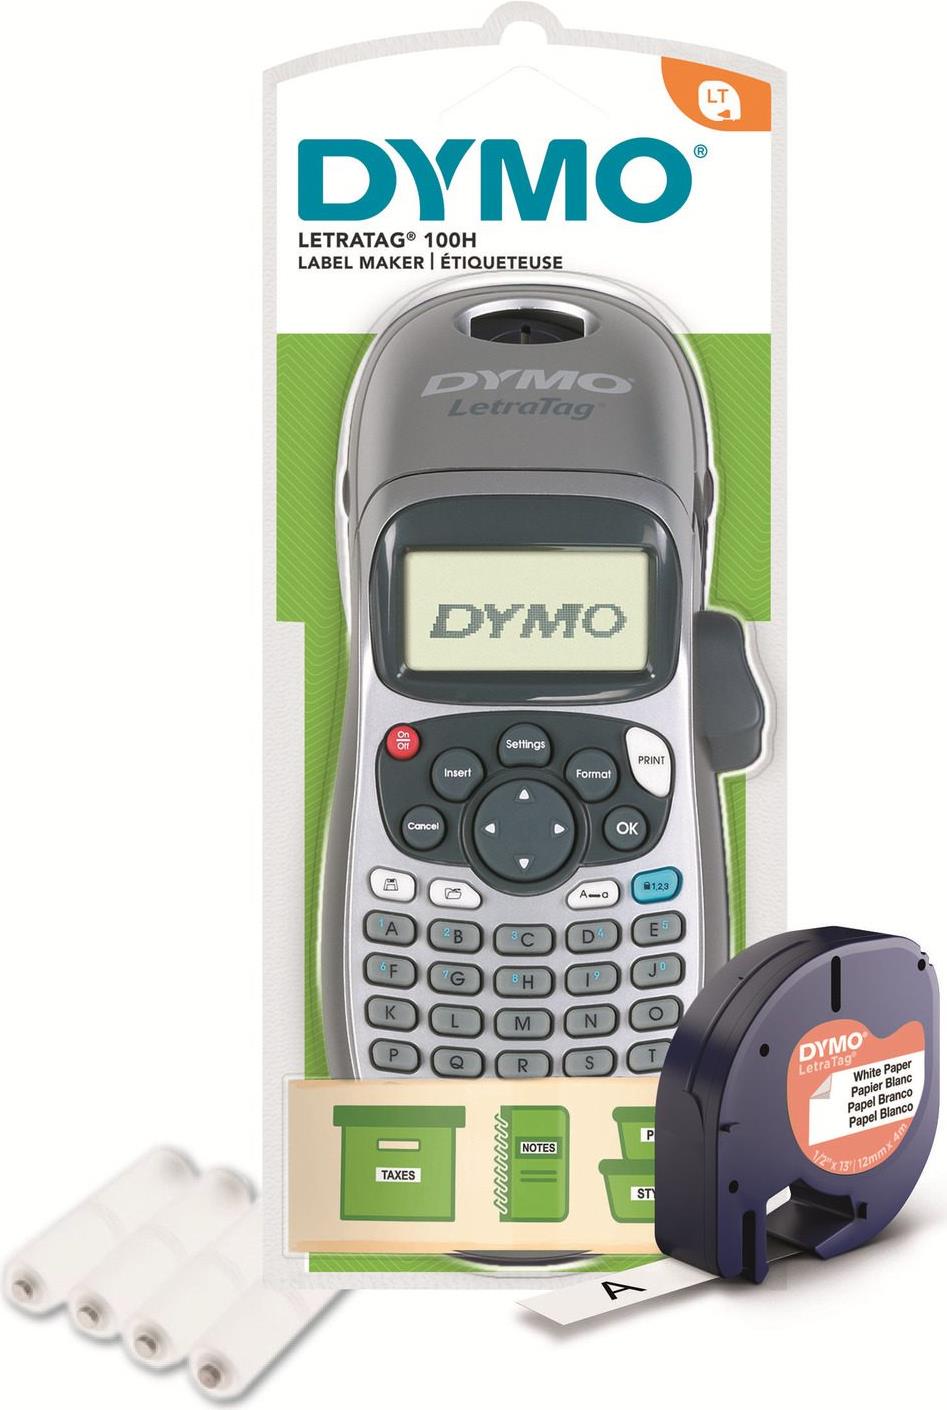 DYMO LetraTag LT-100H Beschriftungsgerät - Silber Edition inkl. Batterien (2174577) von Dymo